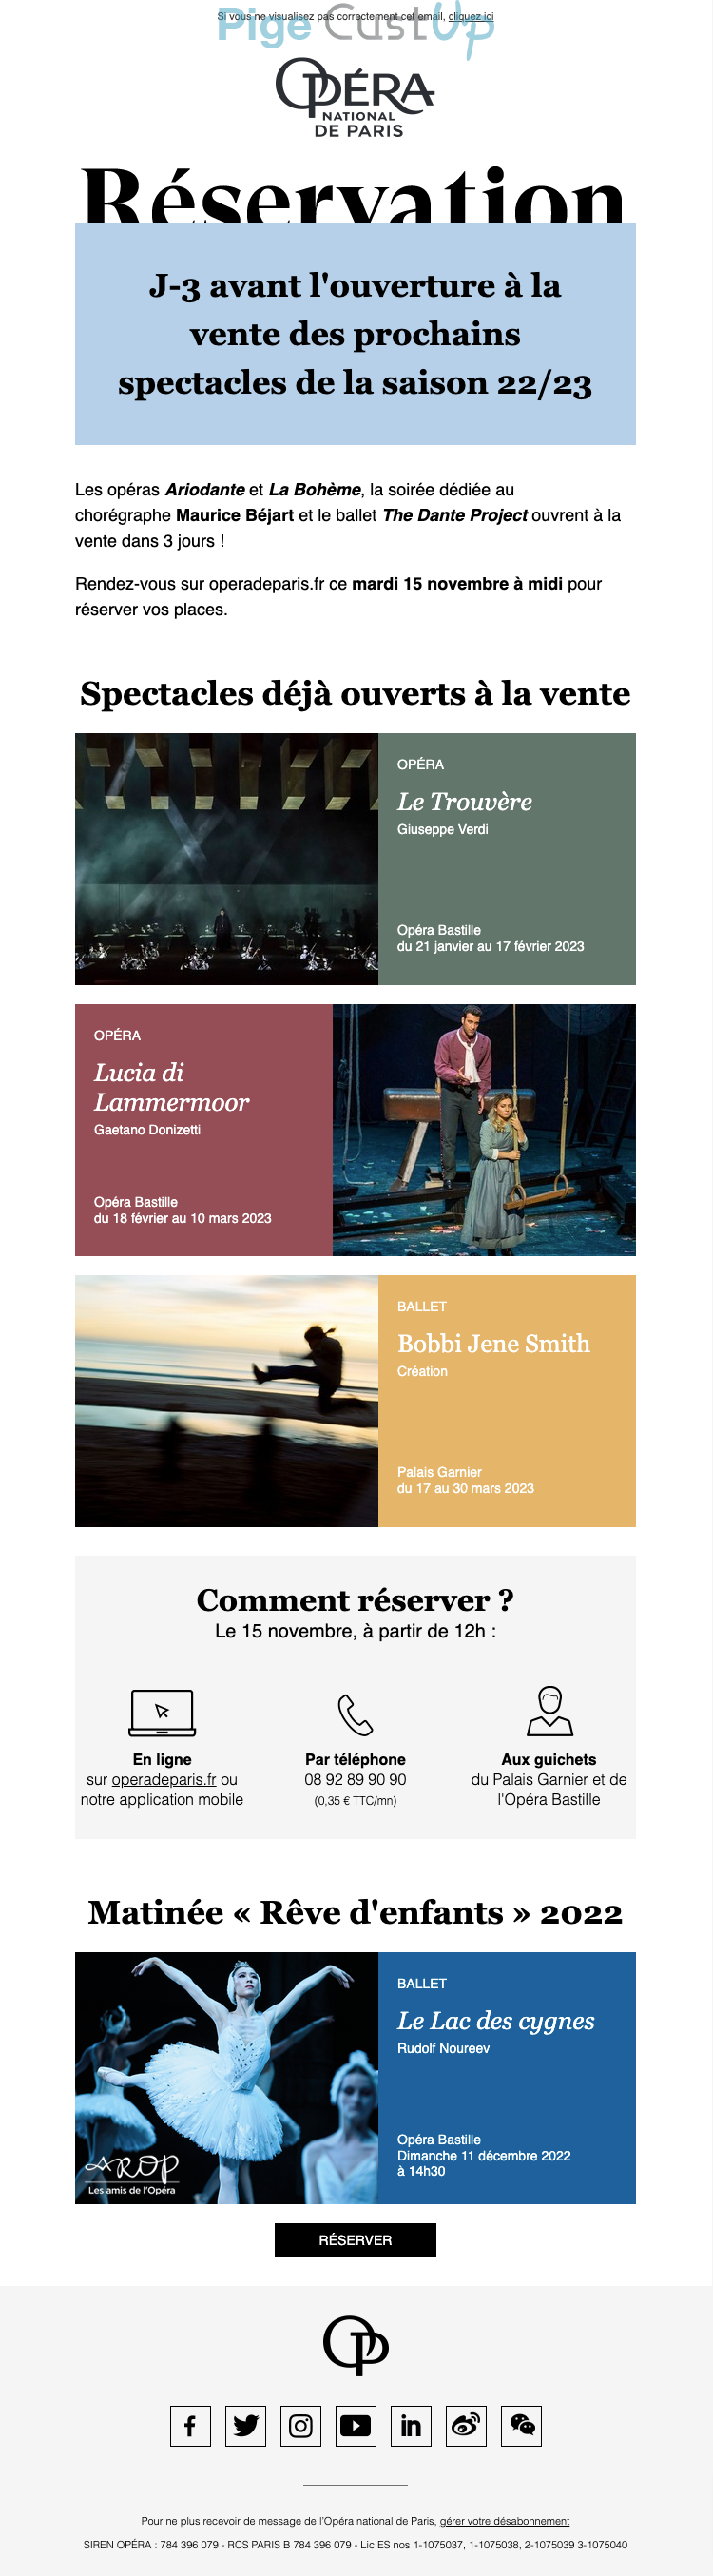 Exemple de Type de media  e-mailing - Opéra de Paris - Marketing marque - Communication Produits - Nouveaux produits - Communication Services - Nouveaux Services - Marketing relationnel - Newsletter